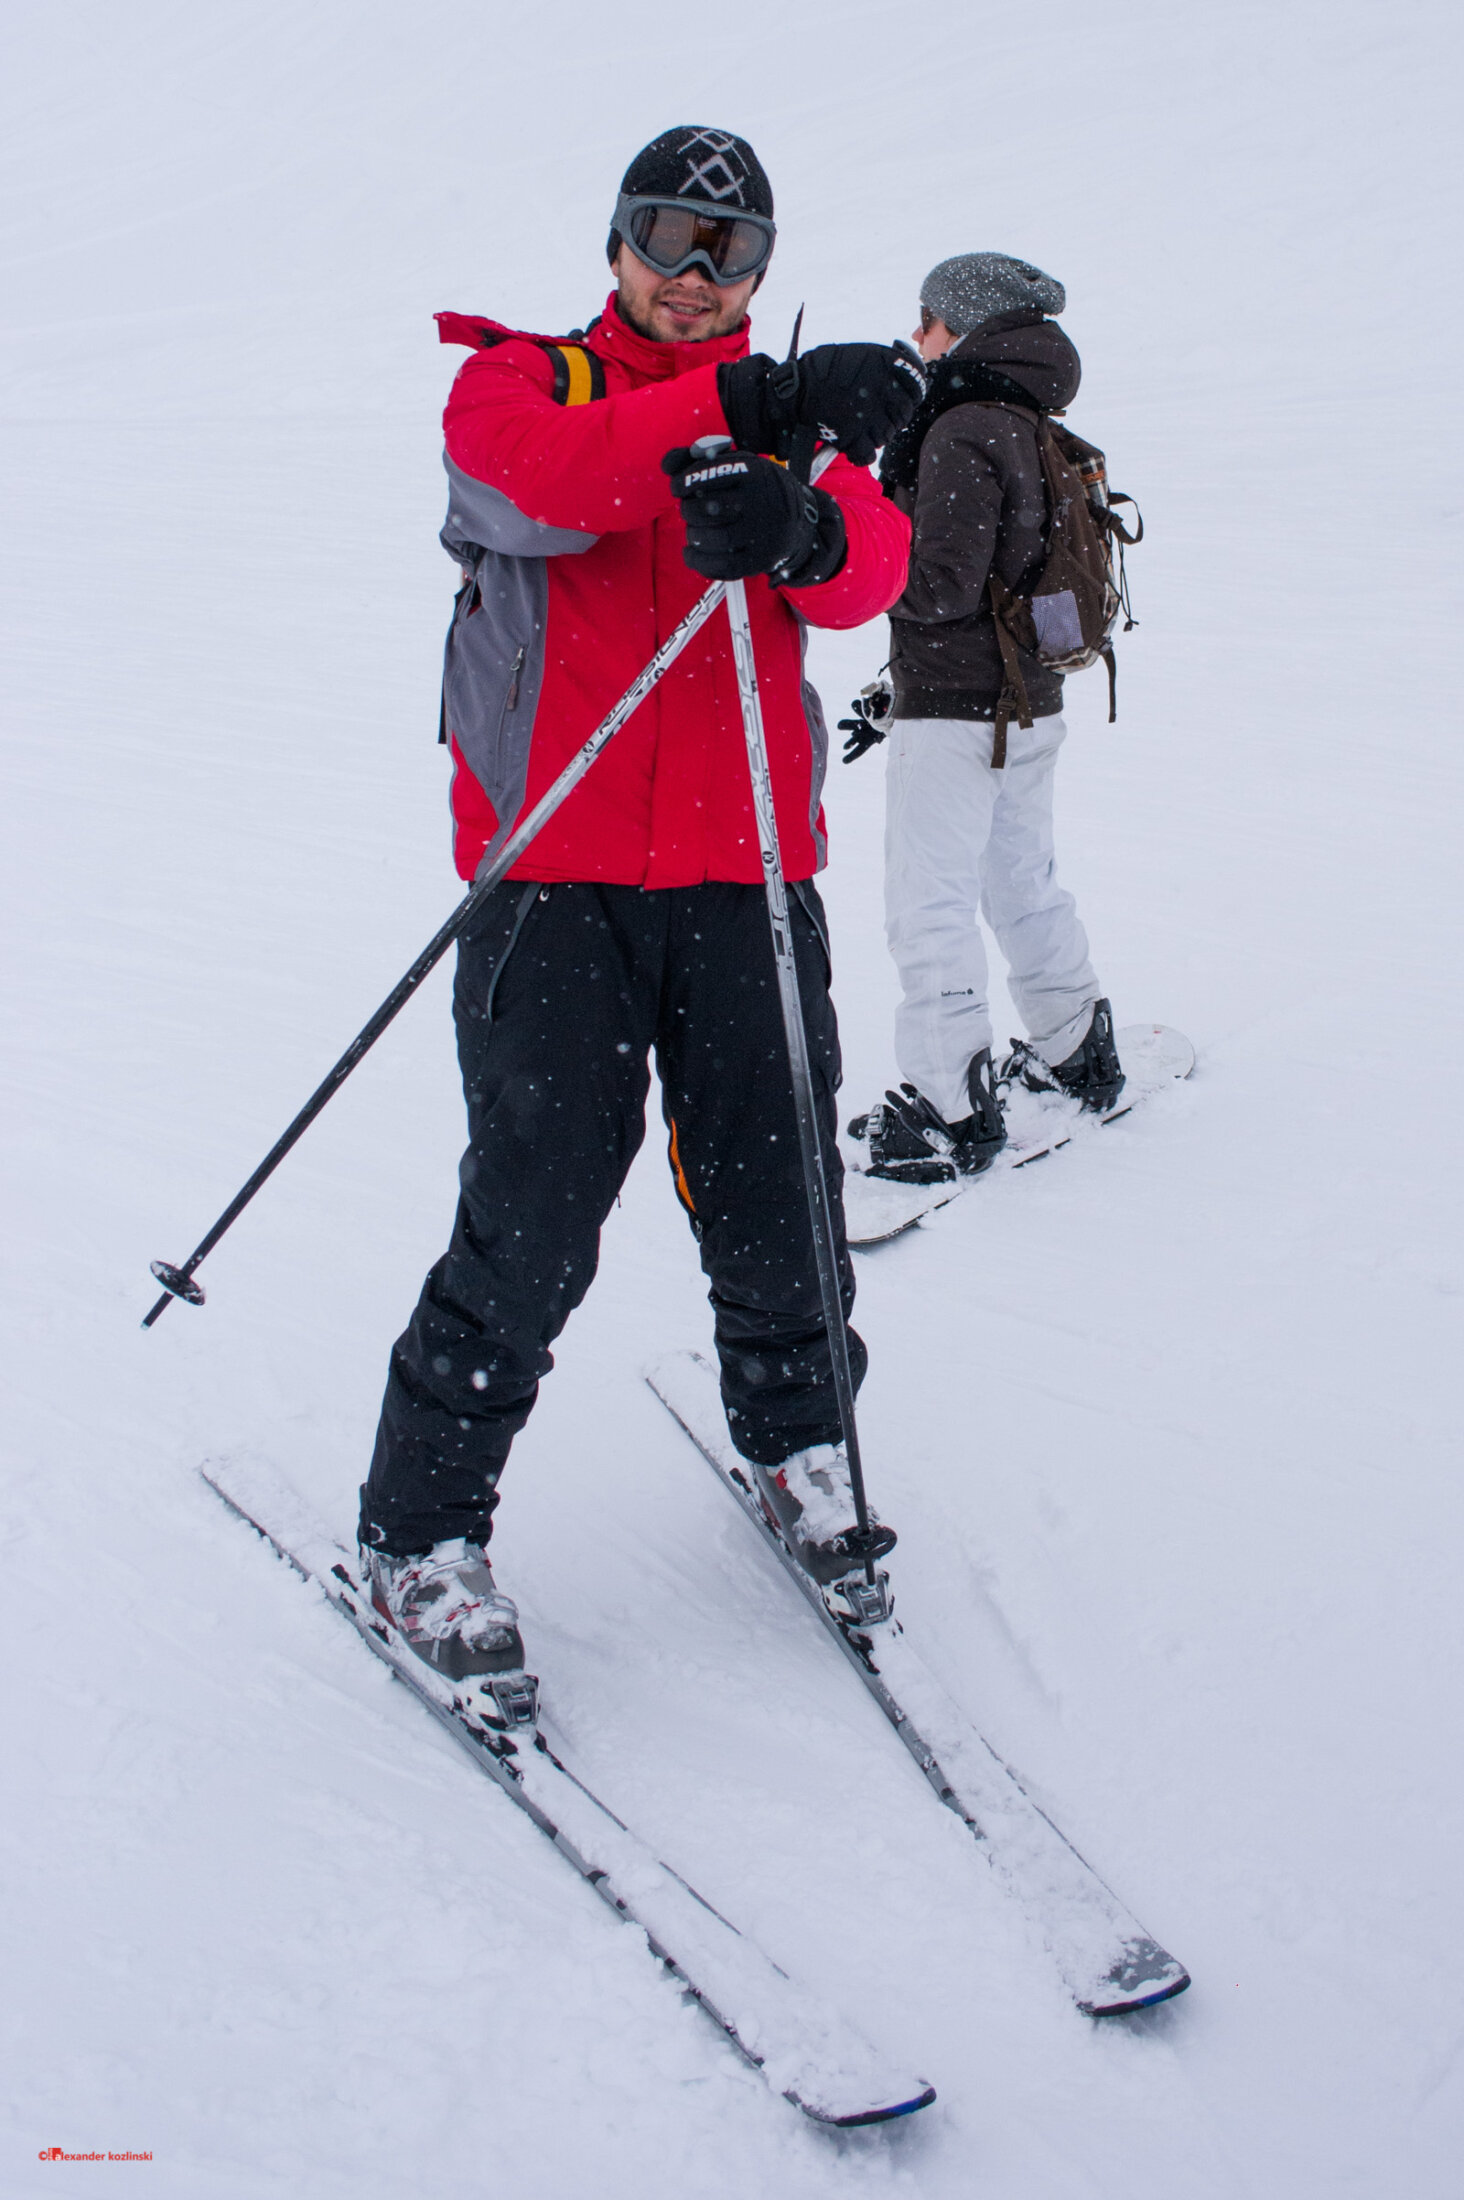 Avoriaz skiing area